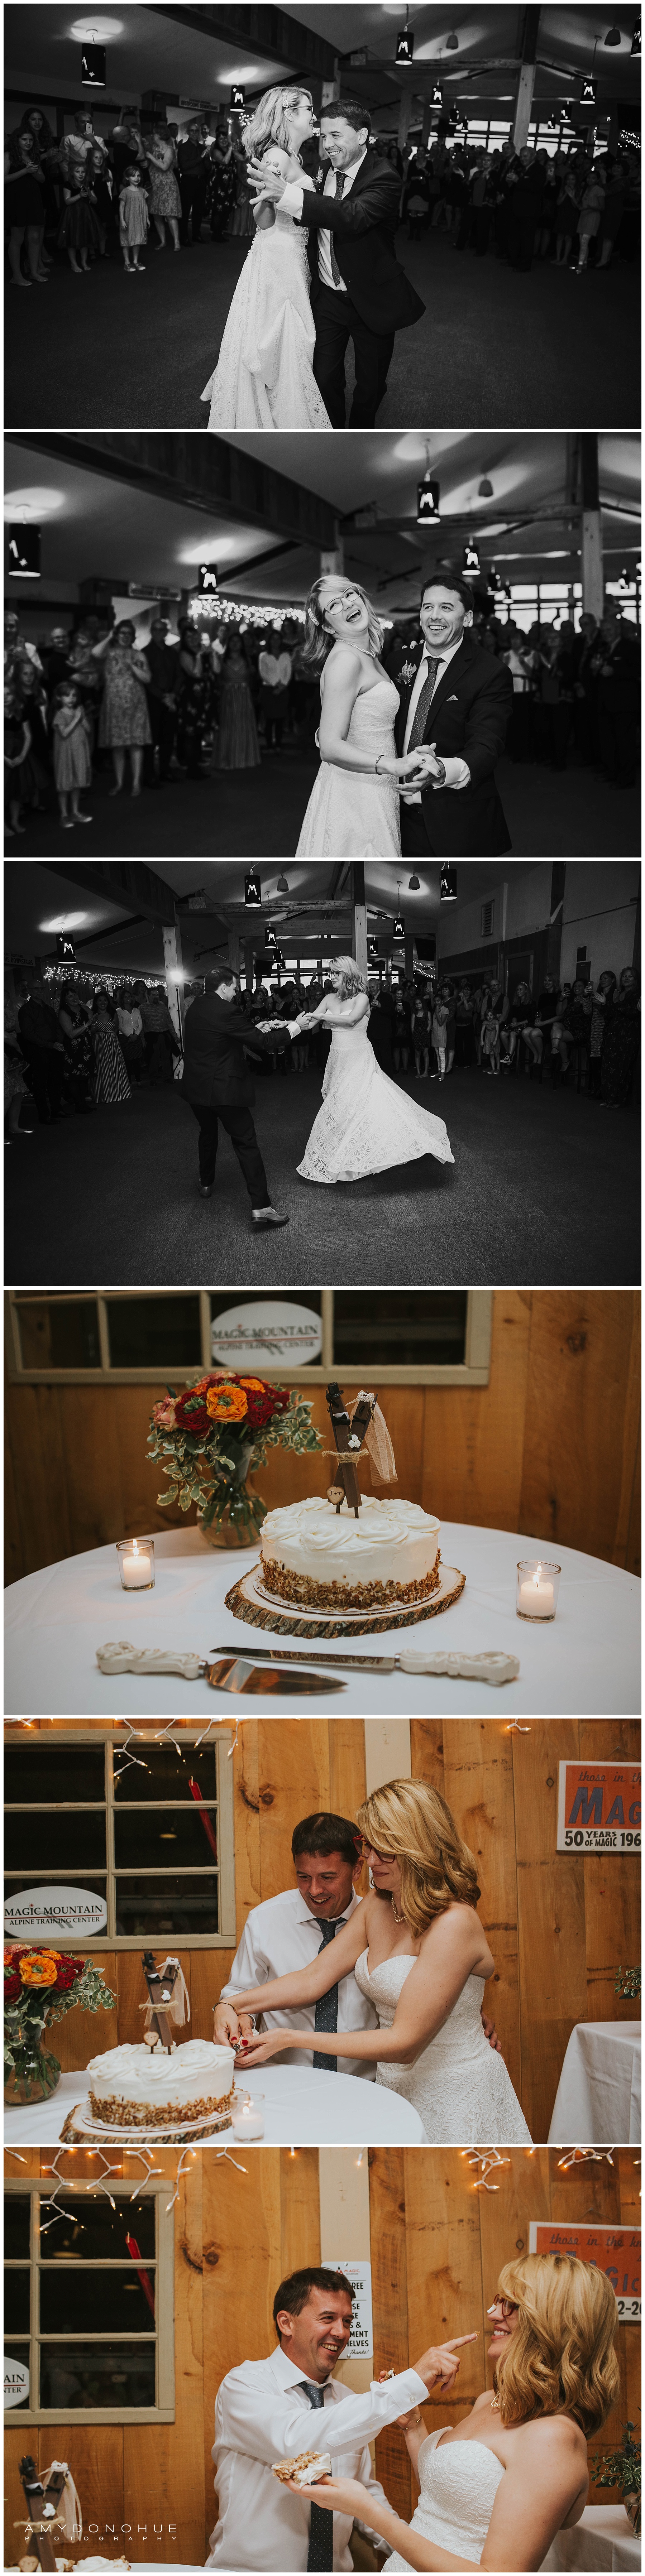 Reception Photos | Vermont Wedding Photographer | © Amy Donohue Photography